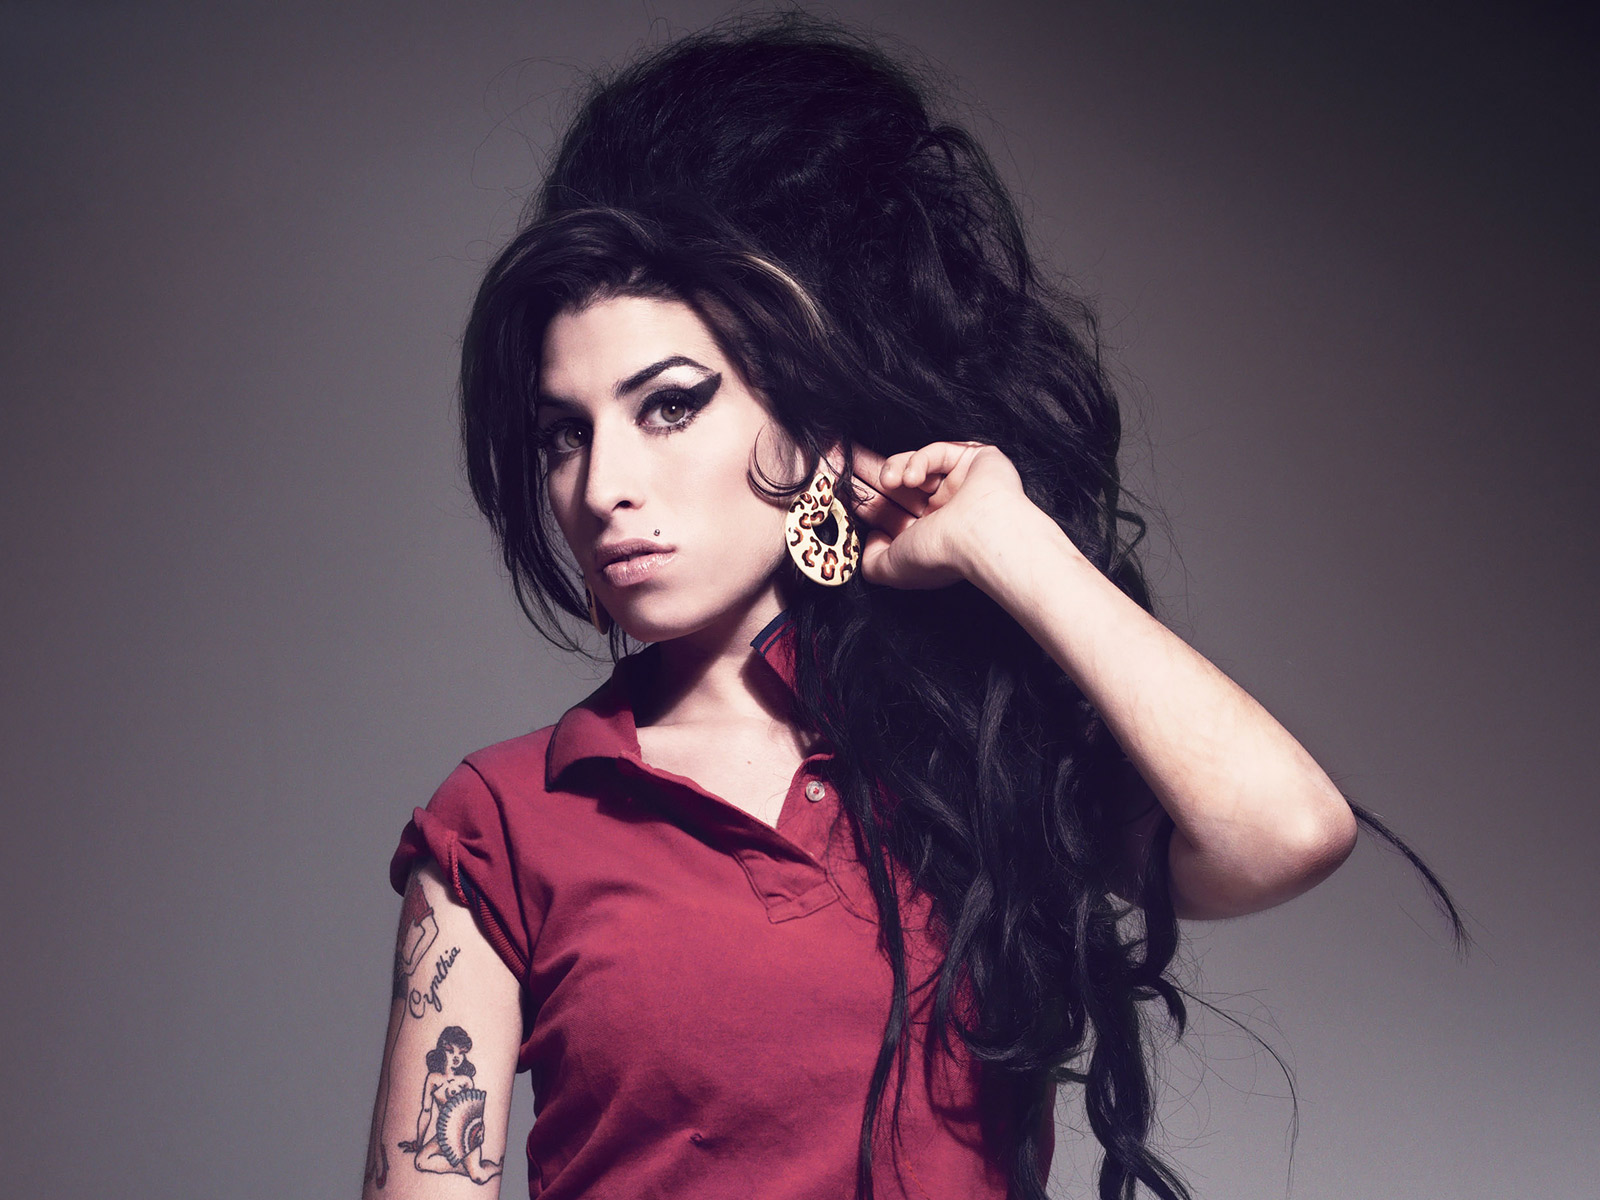 http://2.bp.blogspot.com/-WVkC8Px7jKs/TlSAZphYufI/AAAAAAAAAmU/LFZkfz_uQ8E/s1600/Amy+Winehouse+02.jpg